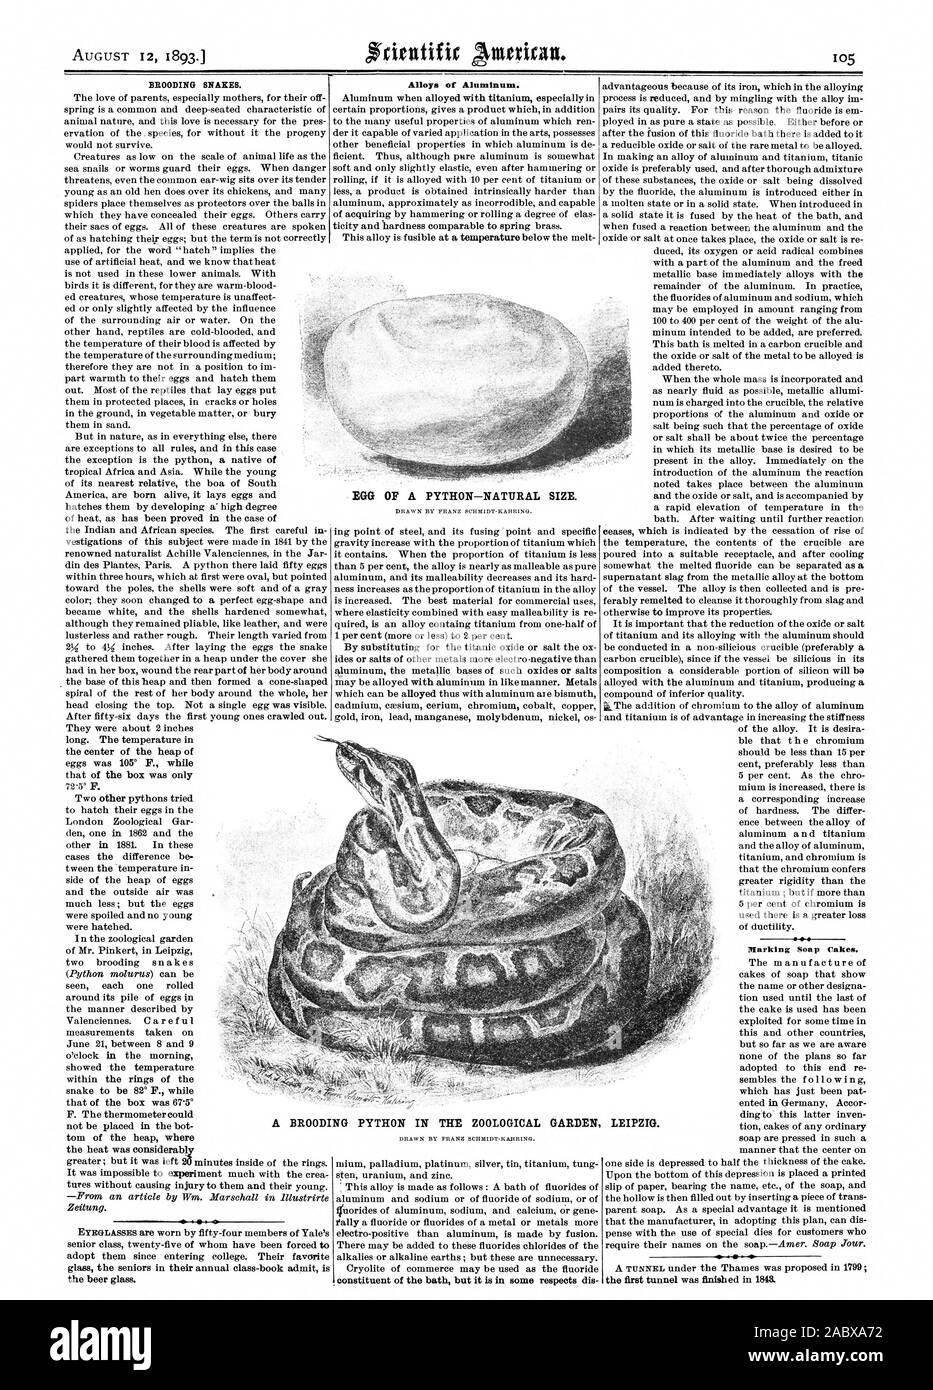 La cova serpenti. Leghe di alluminio. Marcatura torte di sapone. Uovo di python-dimensione naturale. Un meditabondo Python nel giardino zoologico di Lipsia., Scientific American, 1893-08-12 Foto Stock